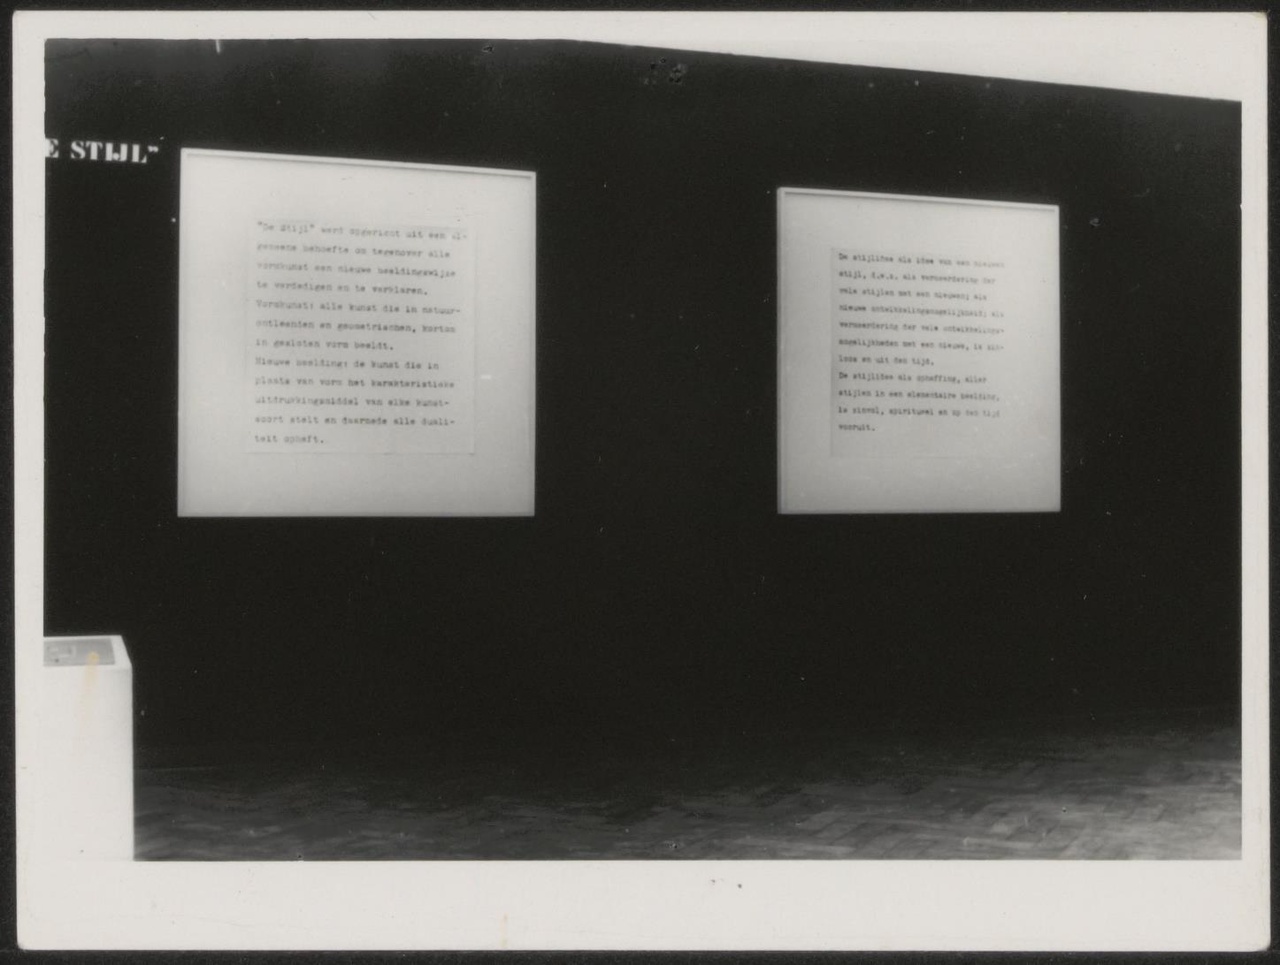 Afbeelding van tentoonstelling De Stijl SMA, 1951, zaal 1, twee tekstborden